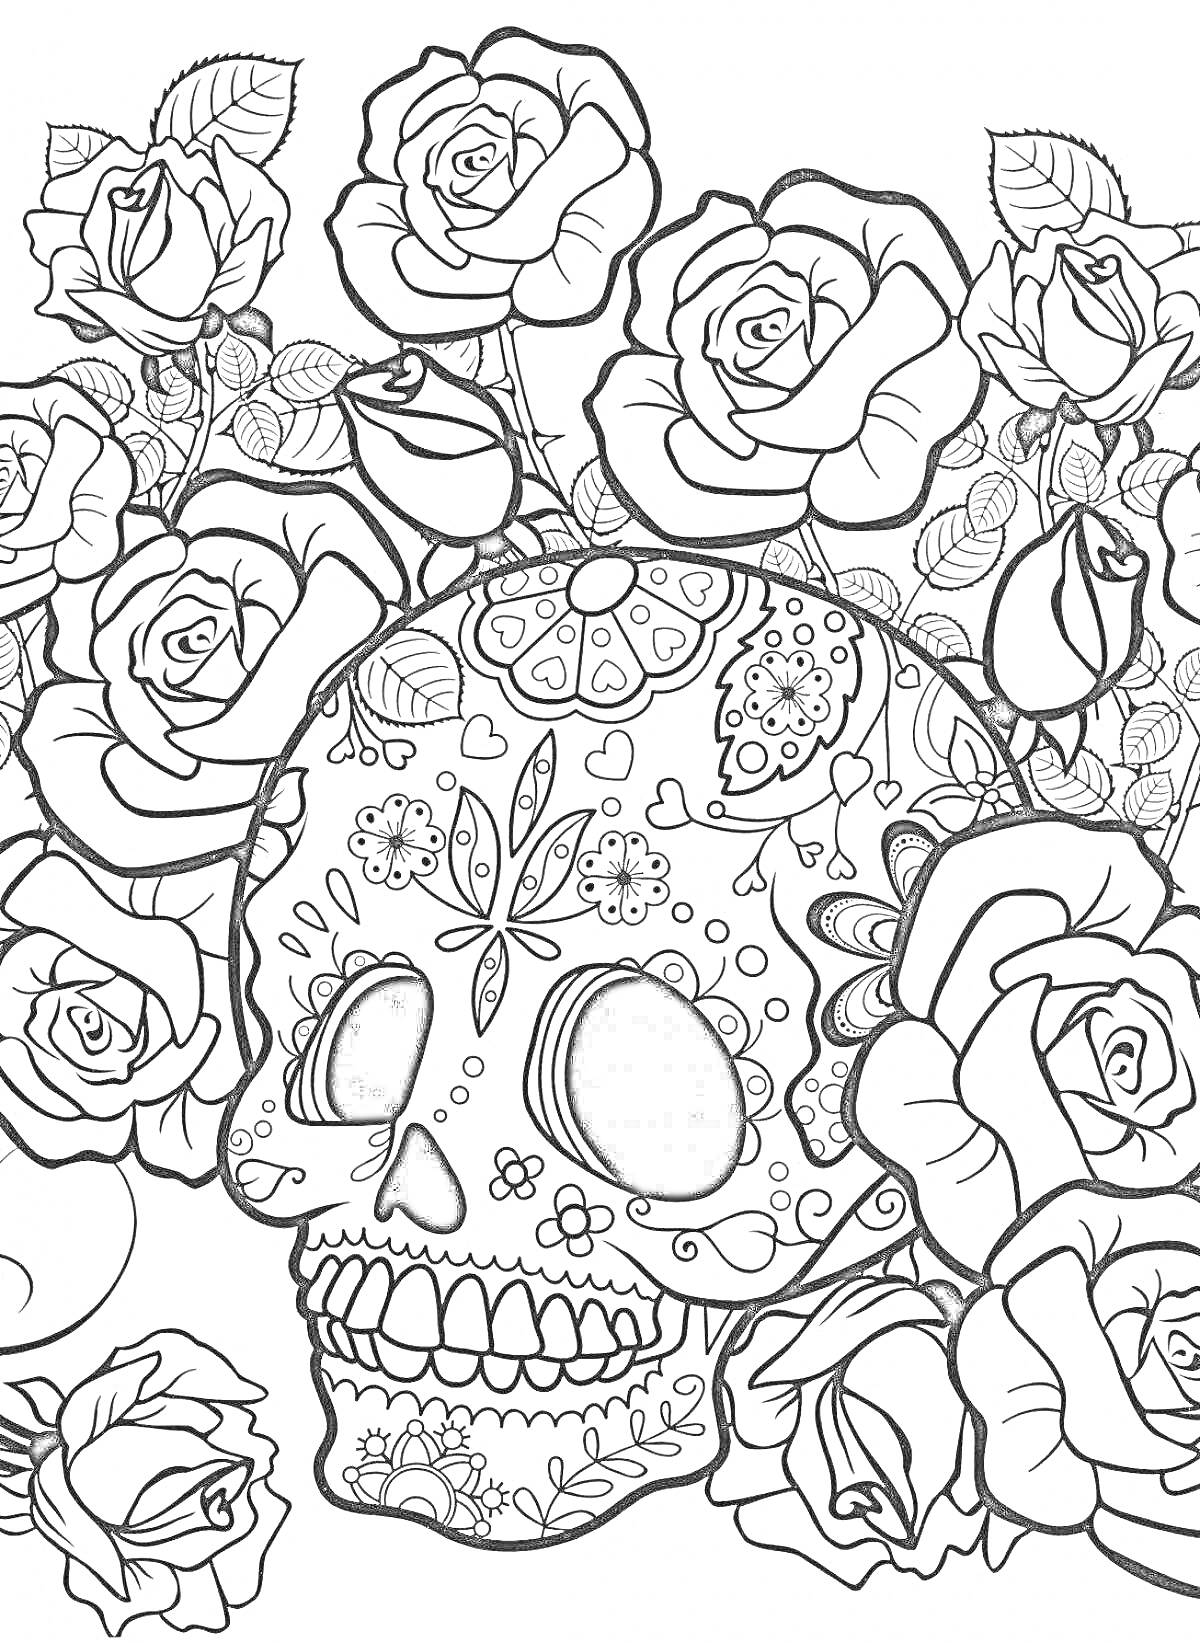 Раскраска Череп с узорами и цветами роз